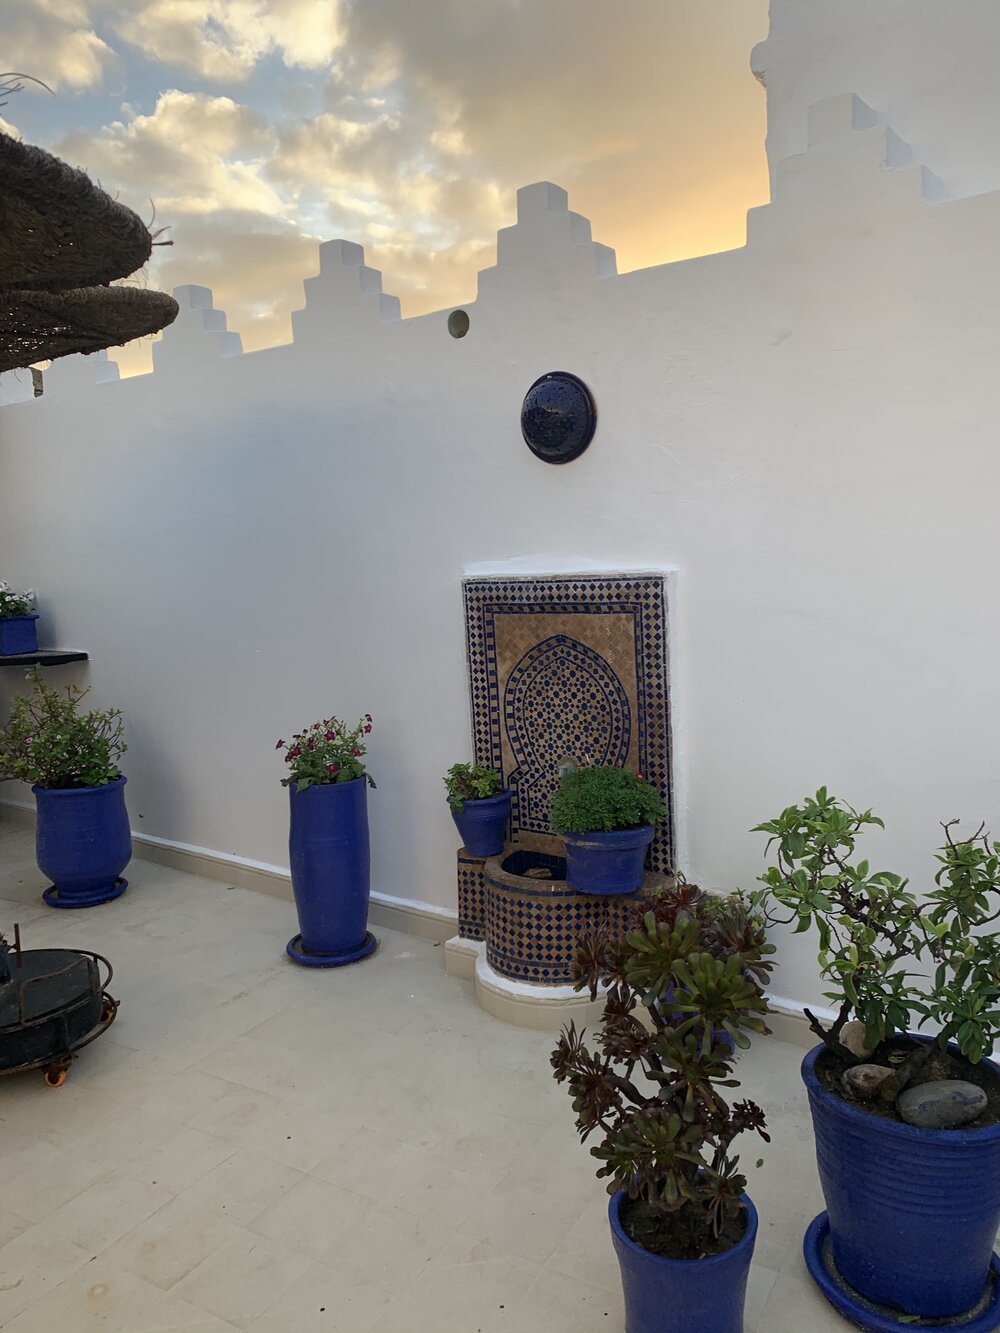 Essaouria riad roof #1.jpg